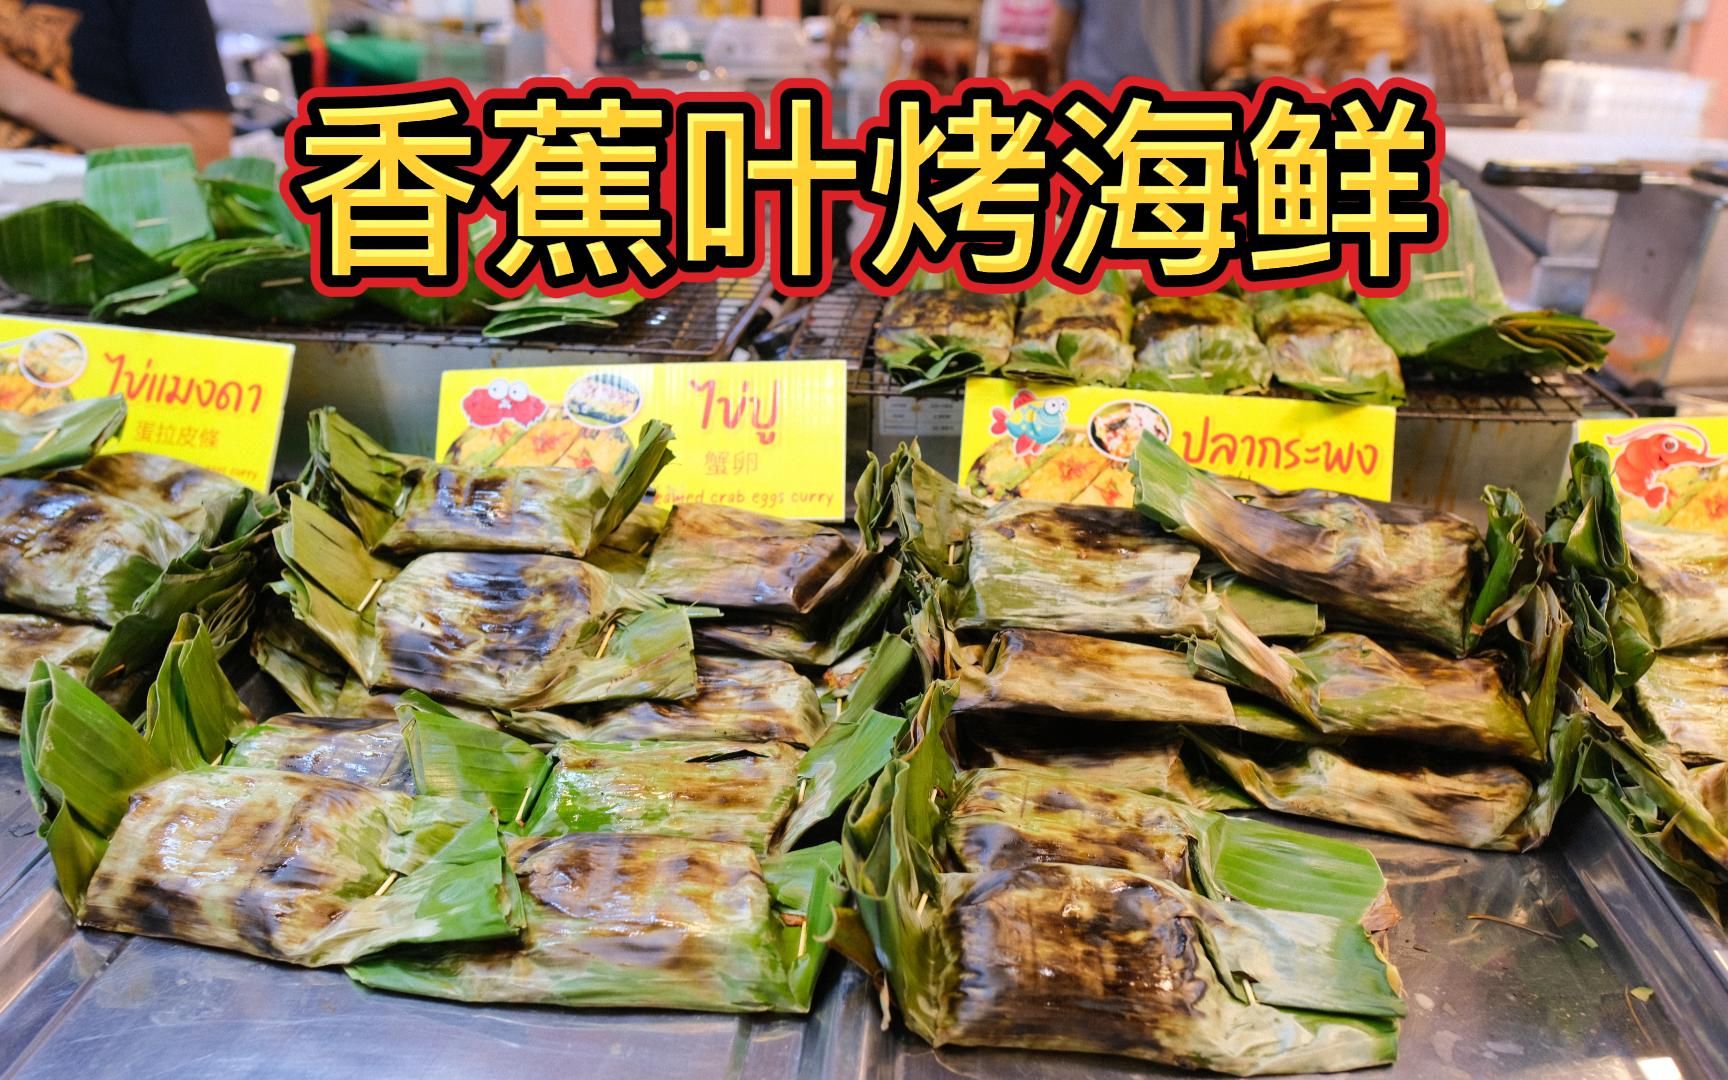 「文森」香蕉叶烤海鲜 - 泰国街头美食